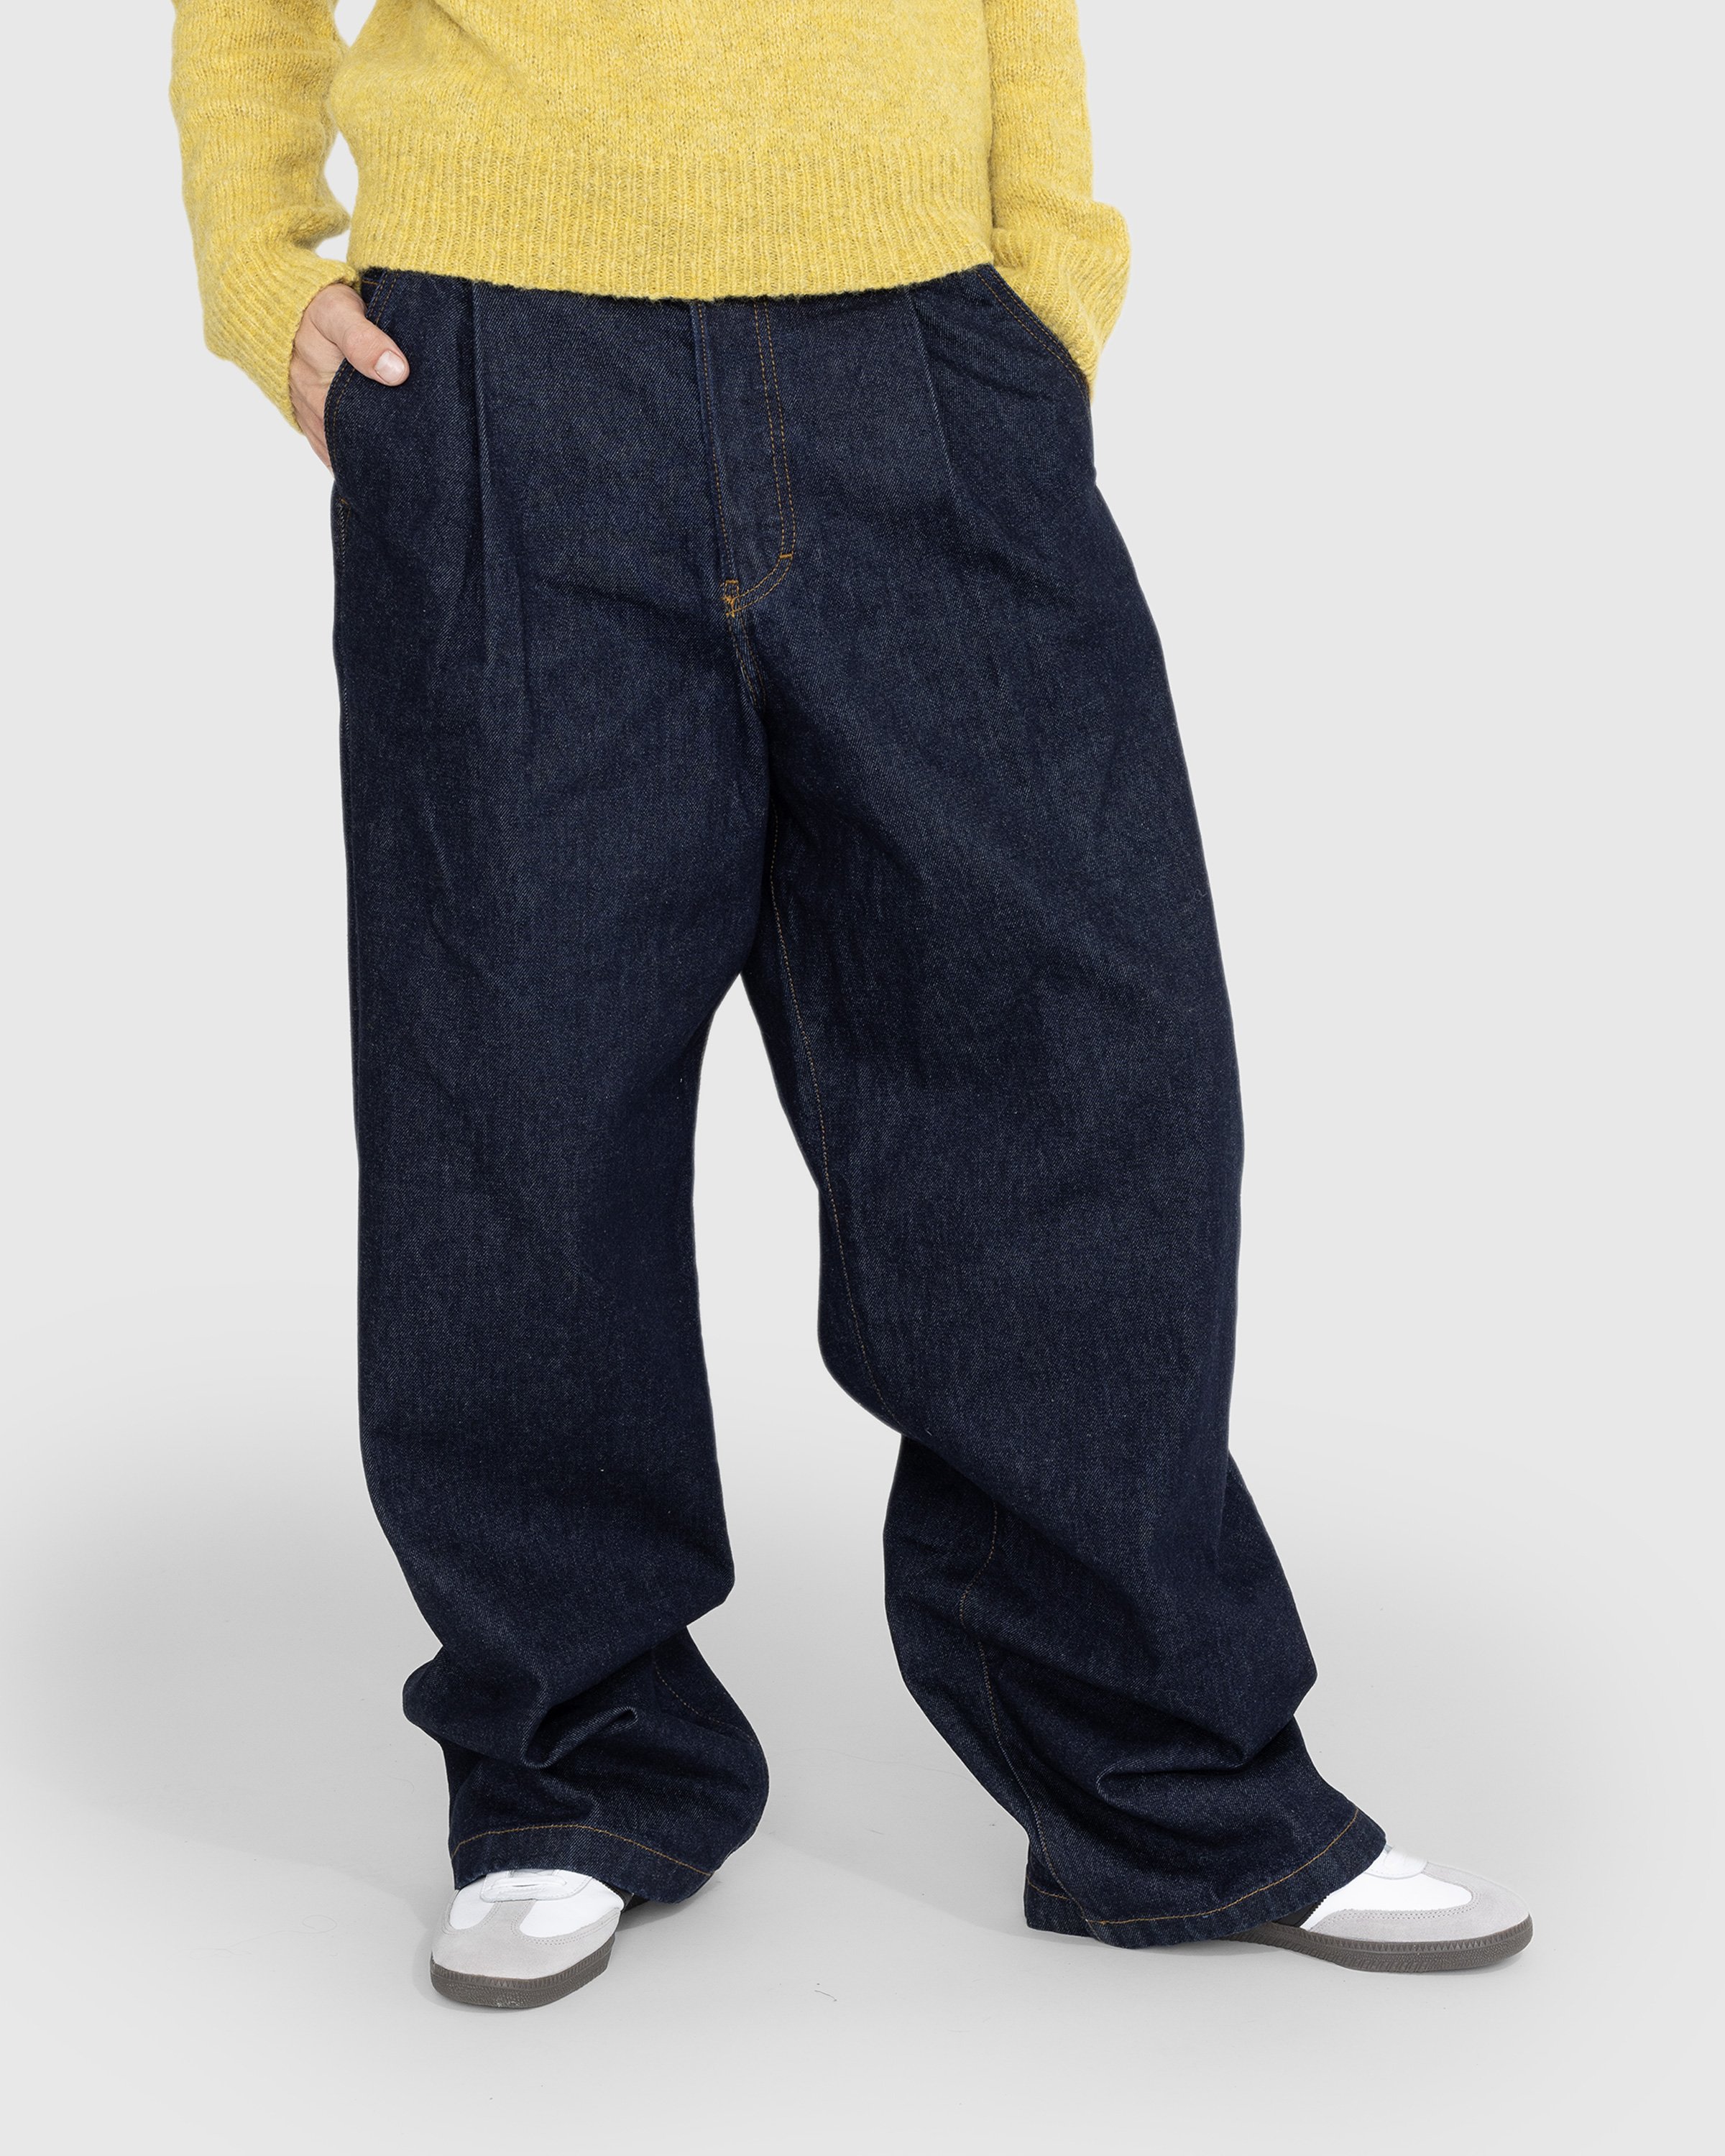 Dries van Noten - Penning Pants Indigo - Clothing - Blue - Image 2